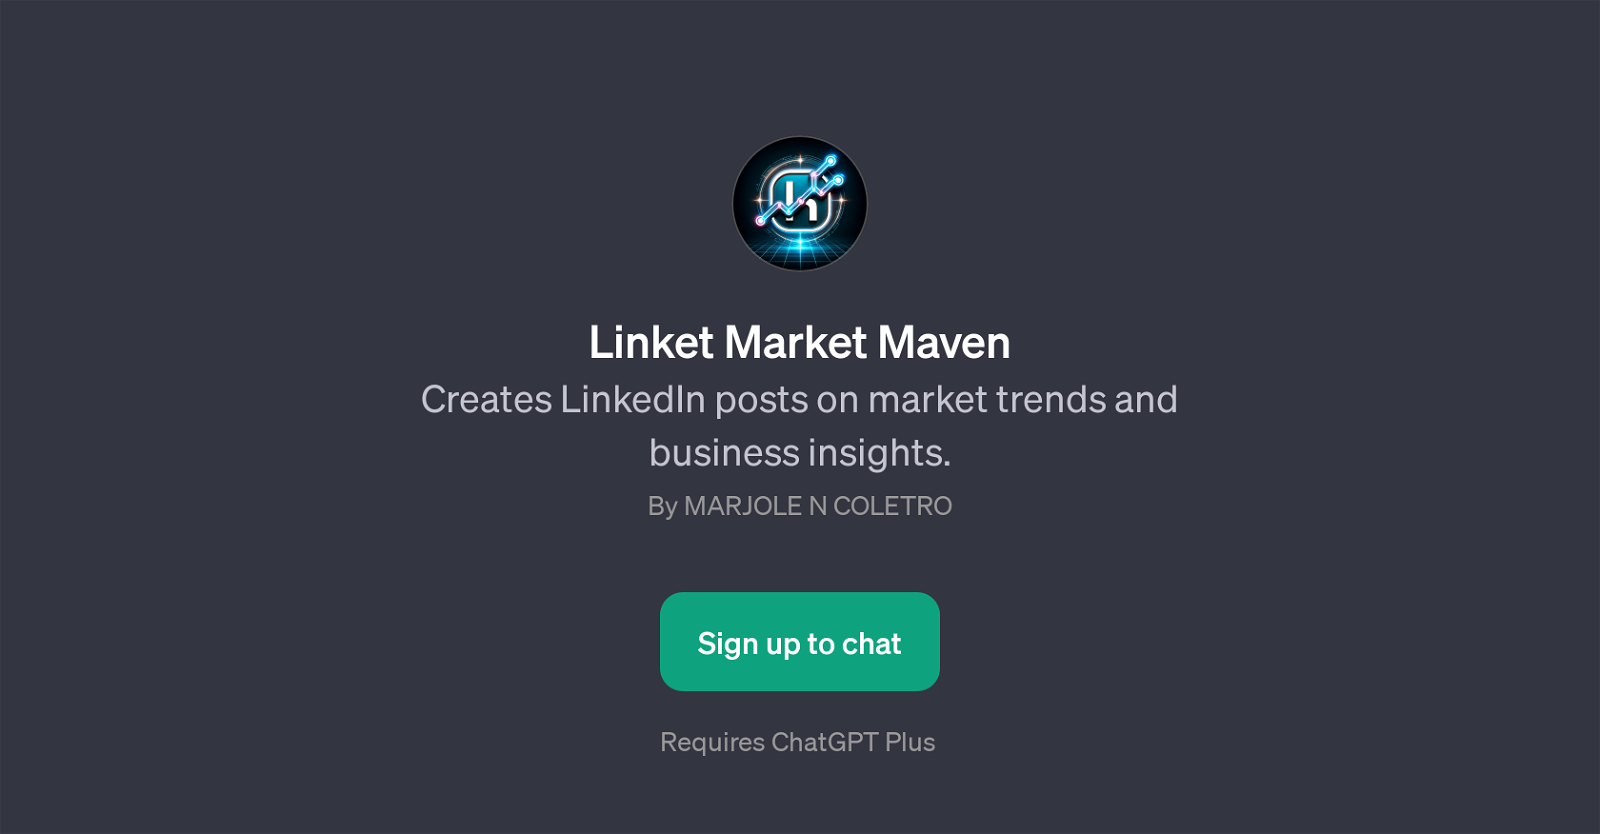 Linket Market Maven website